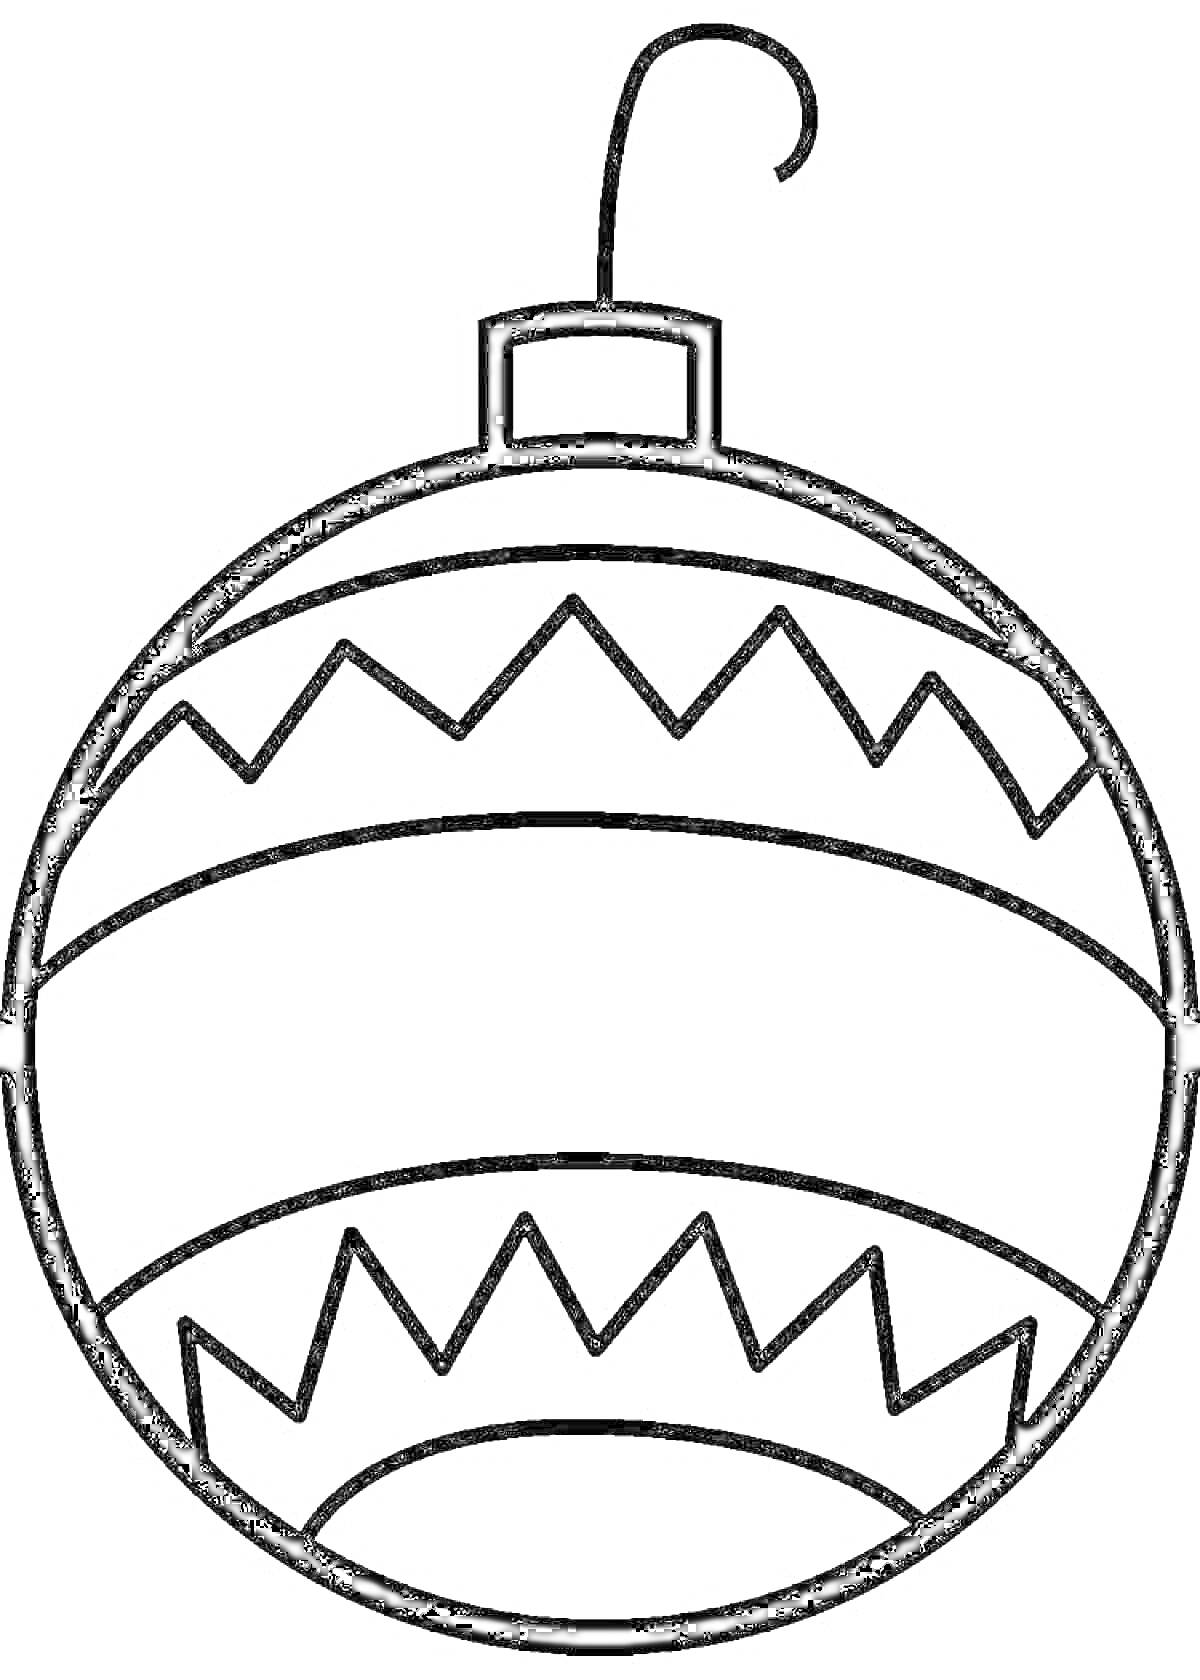 Раскраска Елочная игрушка - круглая, с волнистыми линиями и крючком для подвешивания